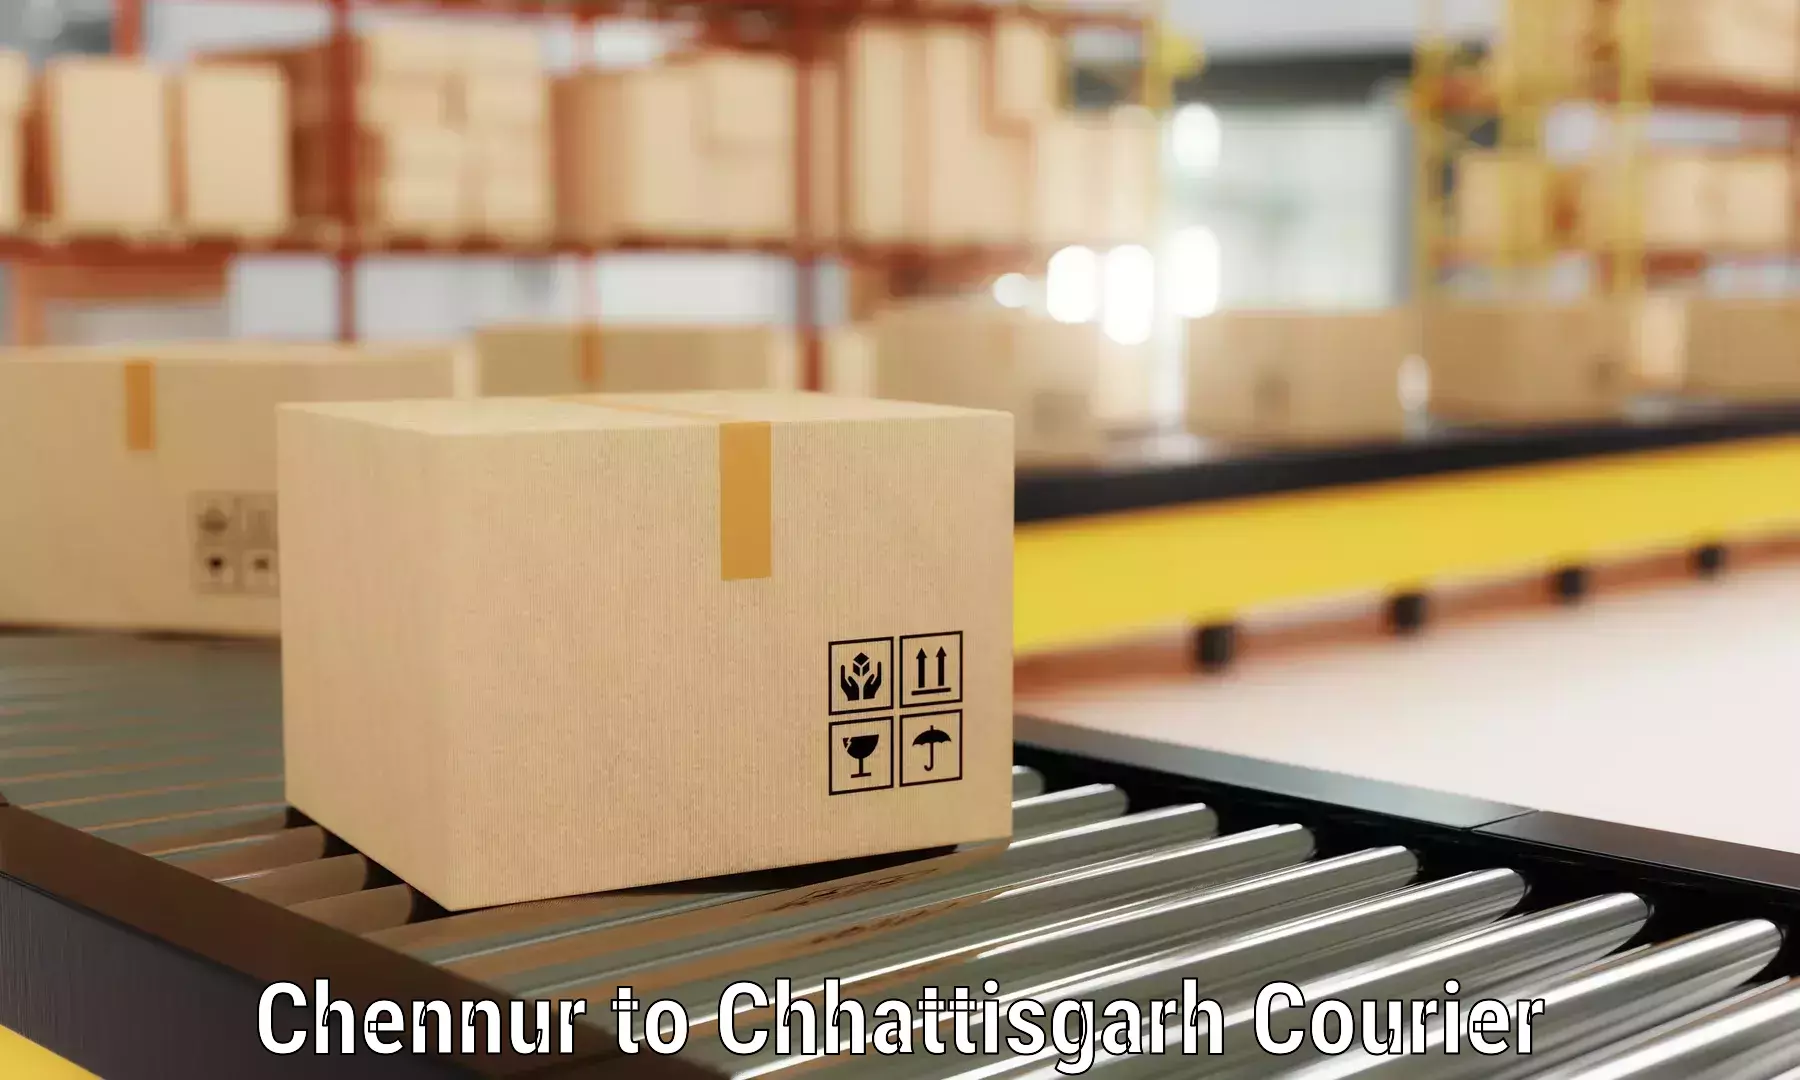 Furniture moving services in Chennur to Chhattisgarh